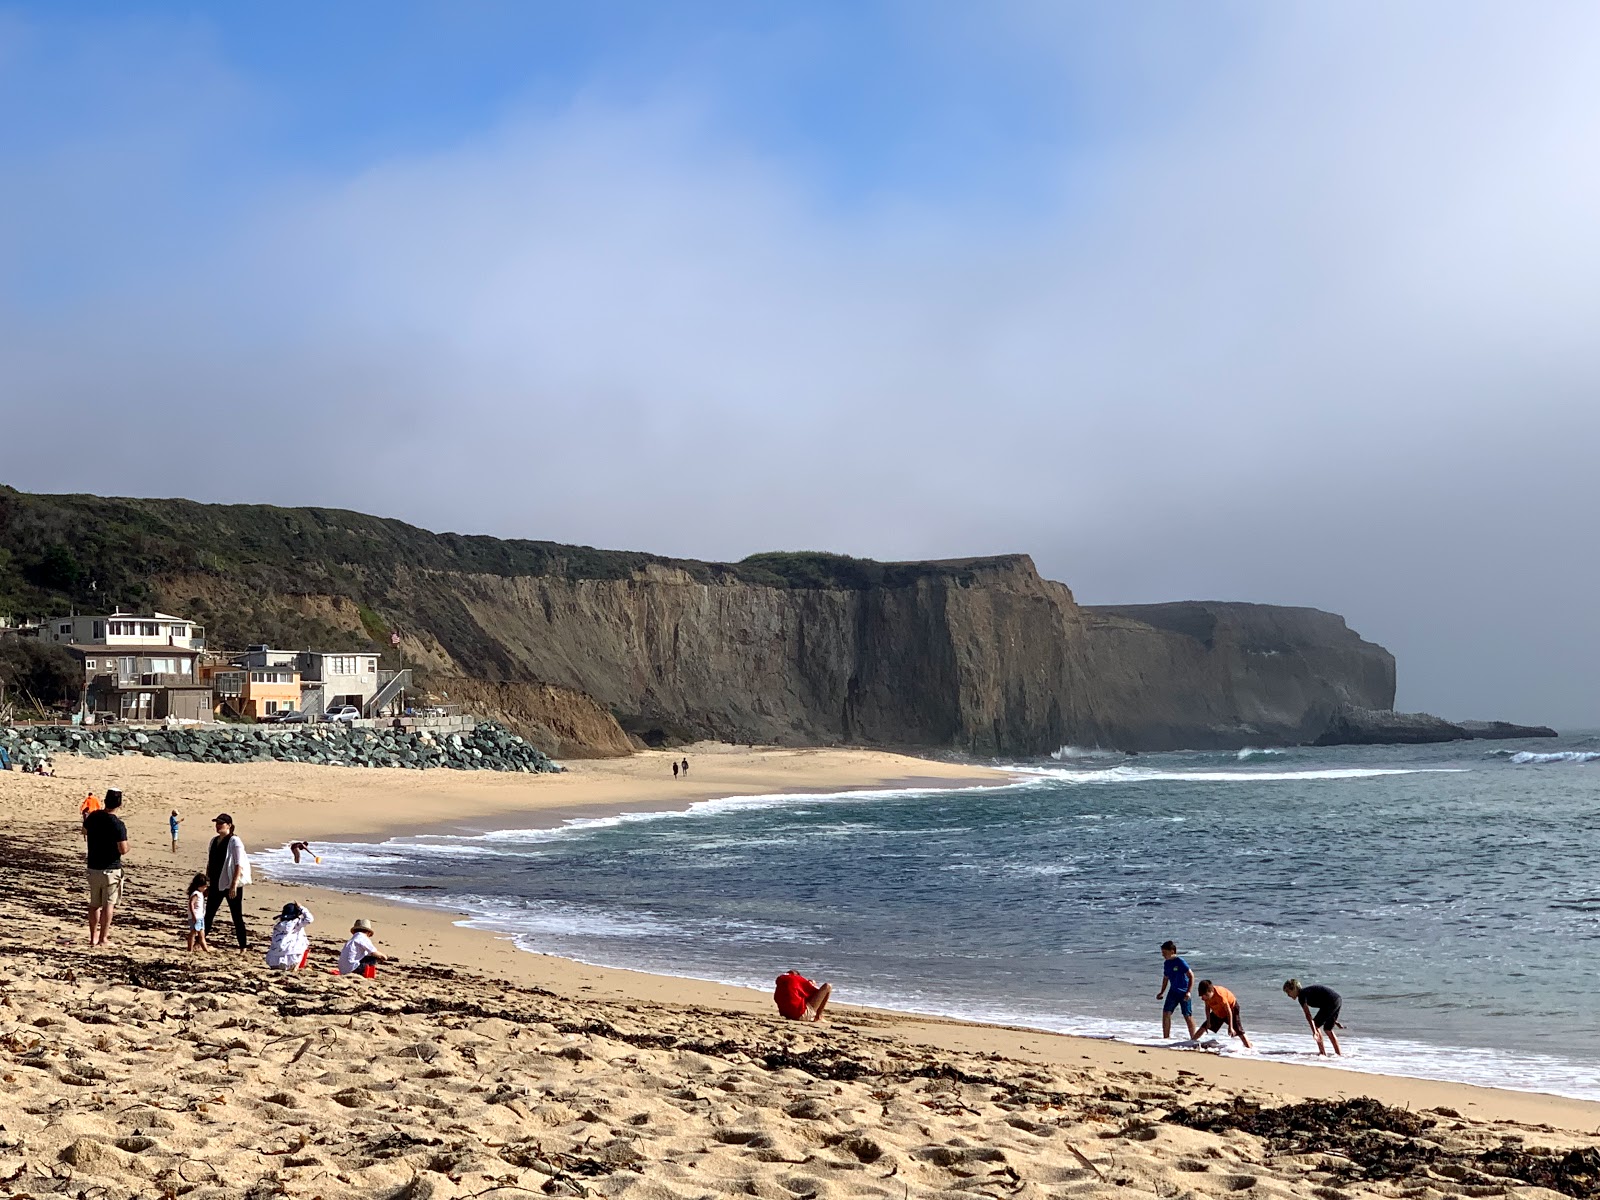 Fotografie cu Martin's Beach - locul popular printre cunoscătorii de relaxare